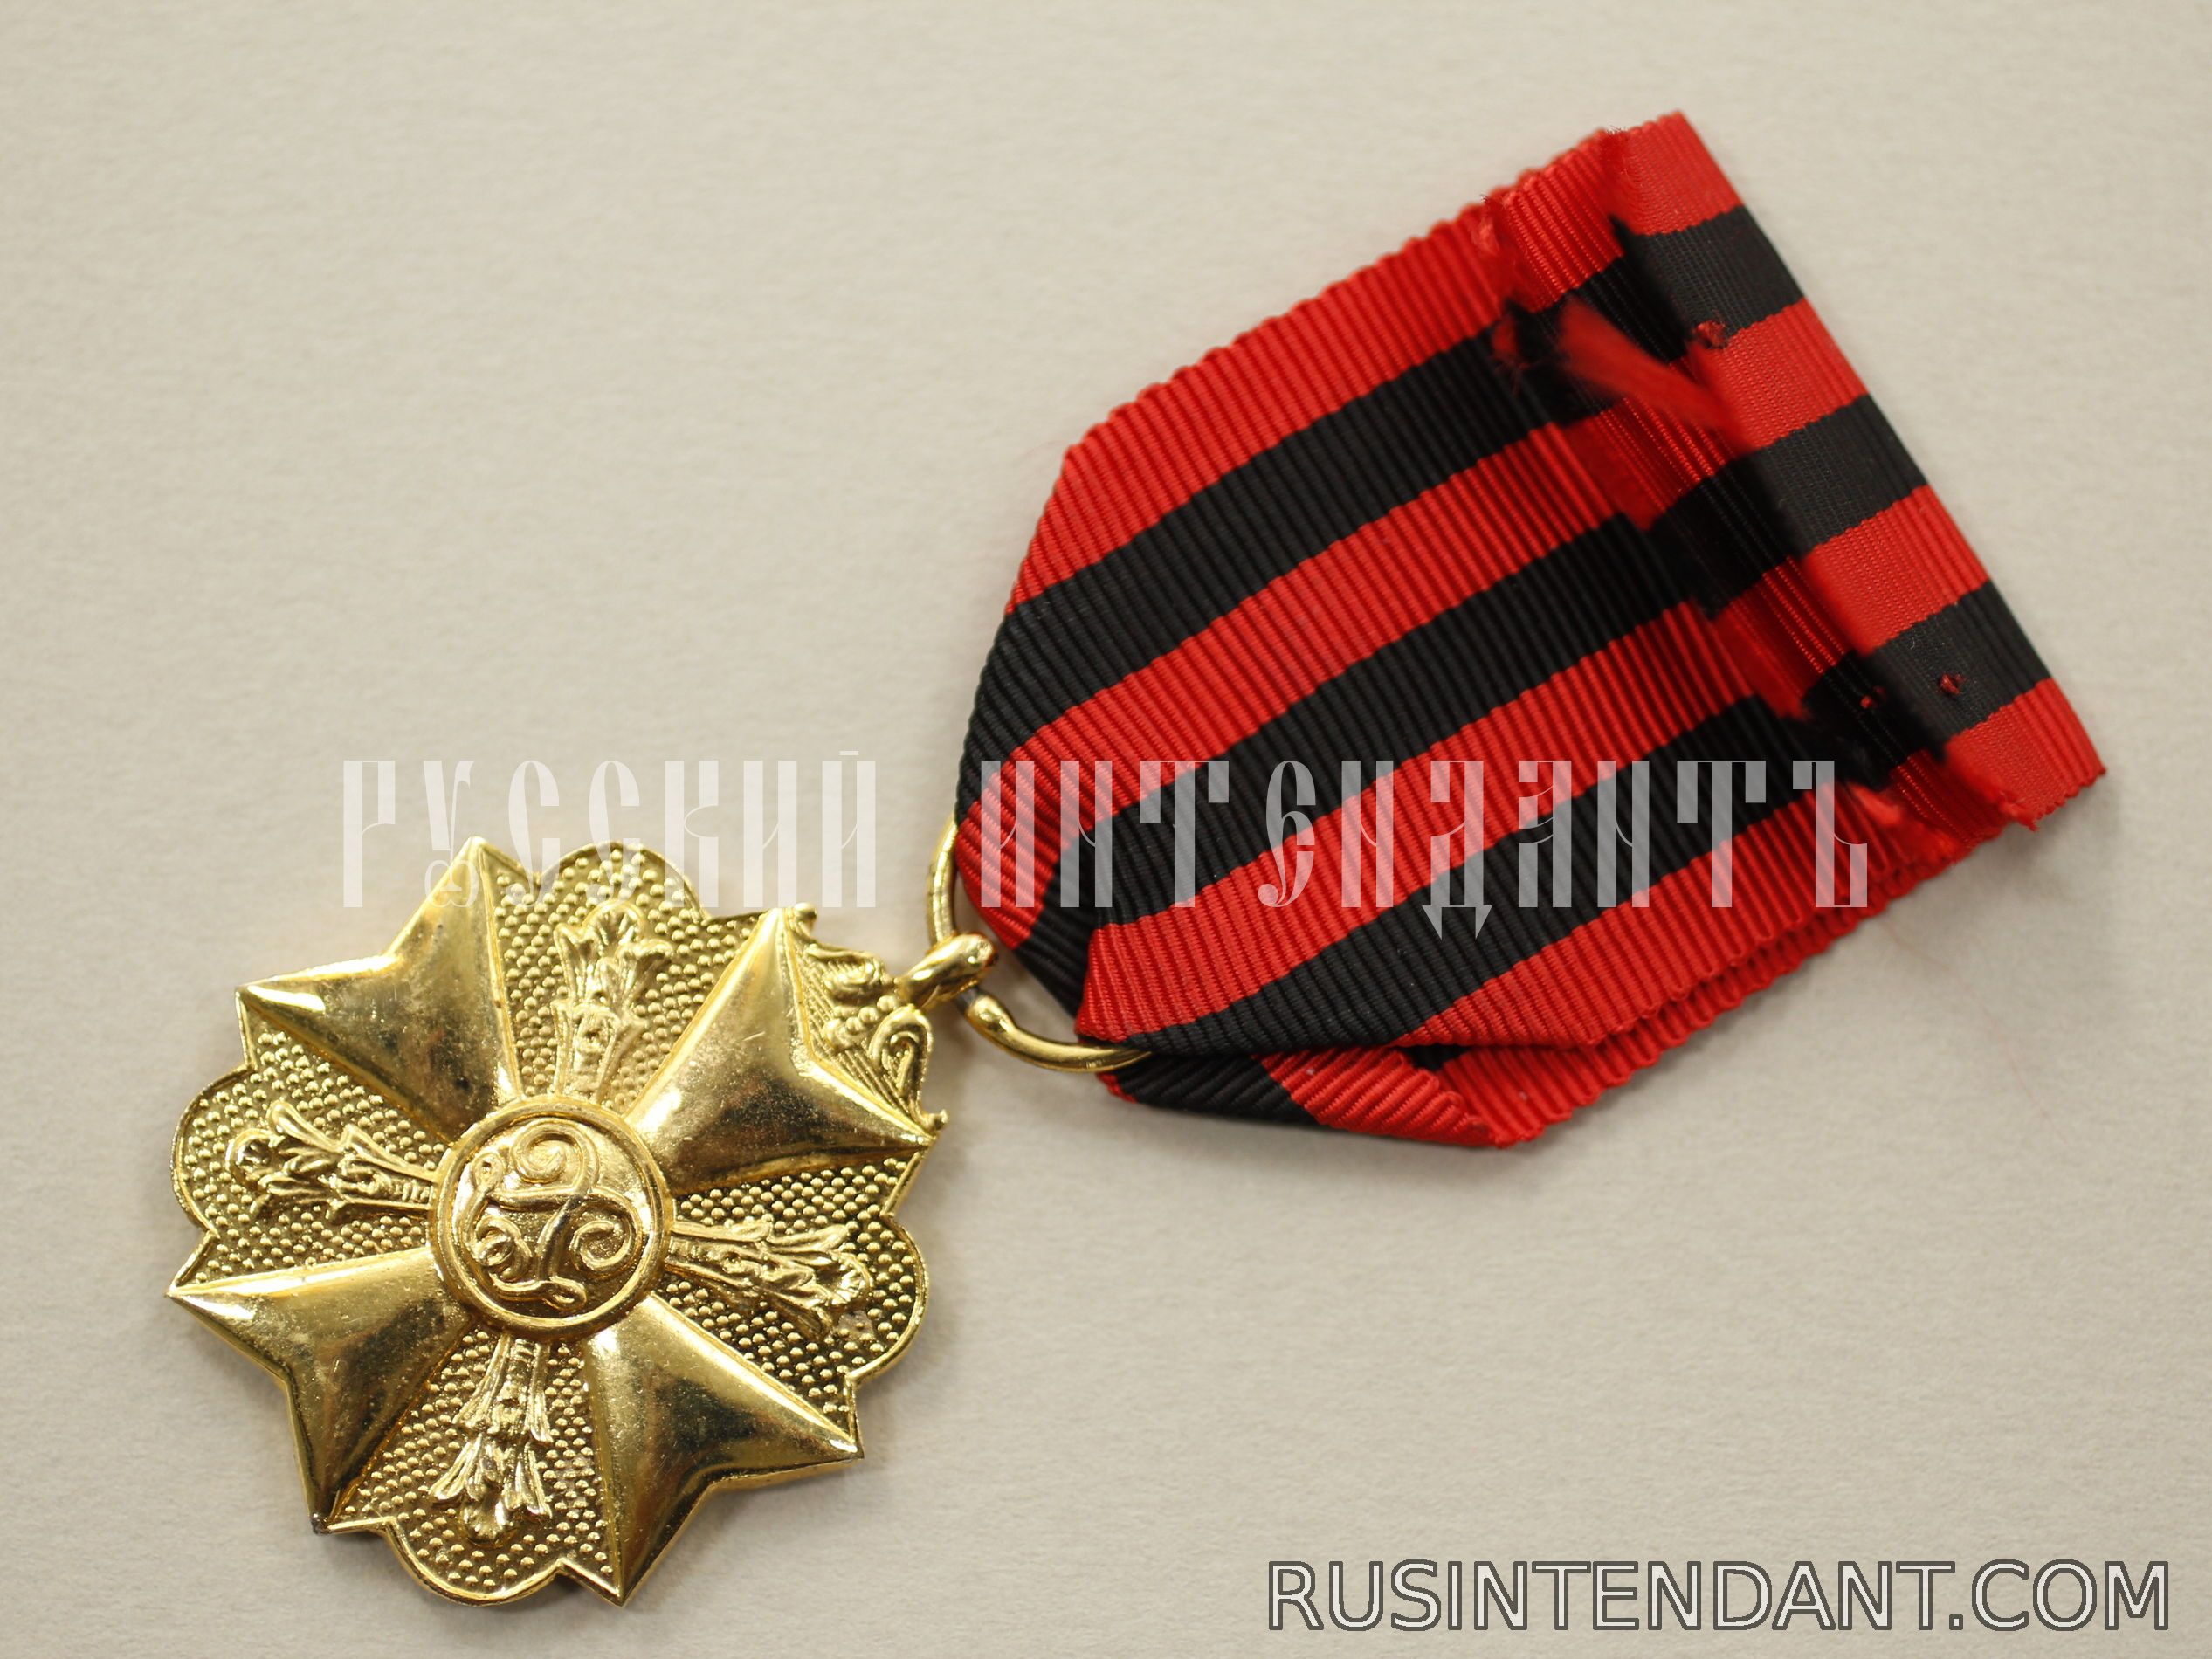 Фото 4: Золотая медаль Гражданского знака отличия 